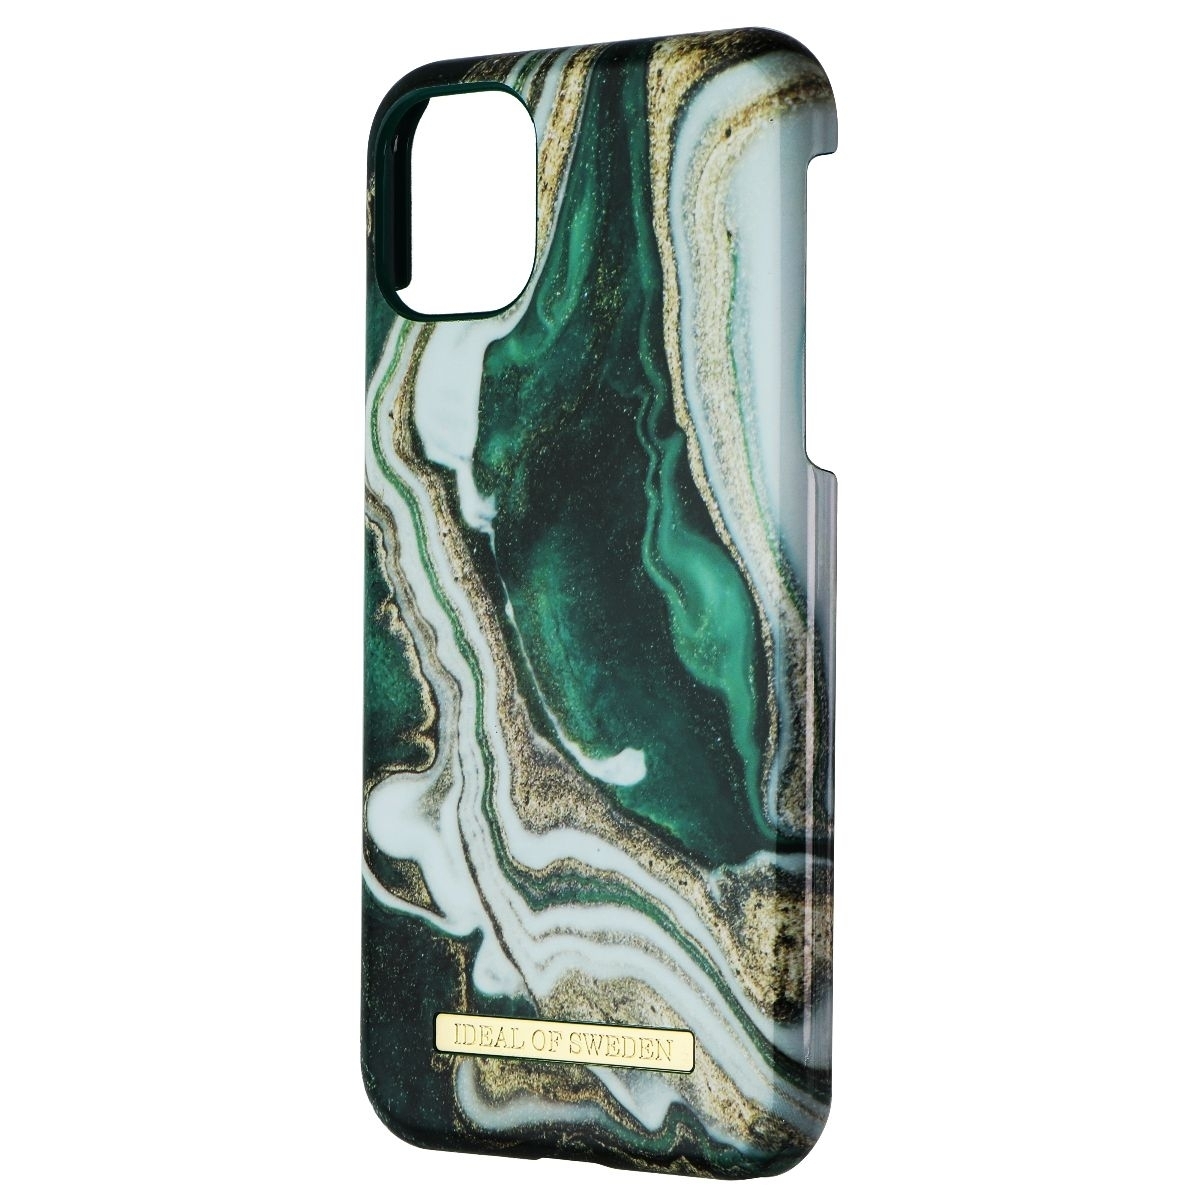 IDeal Of Sweden Printed Hard Case For Apple IPhone 11 & XR - Golden Jade Marble (Refurbished)